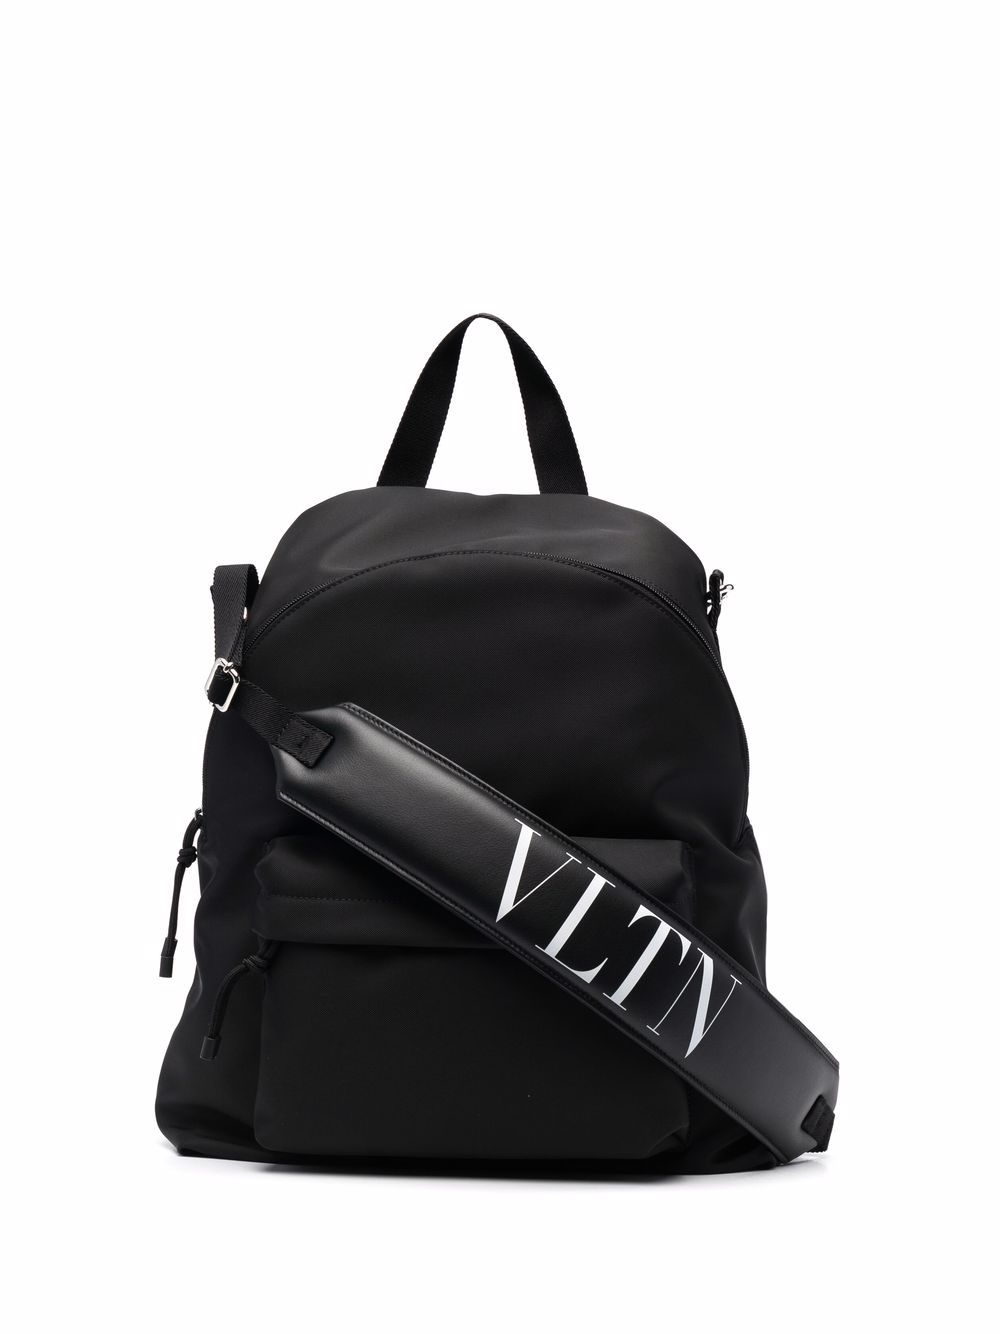 VLTN Backpack, Used & Preloved Valentino Backpack